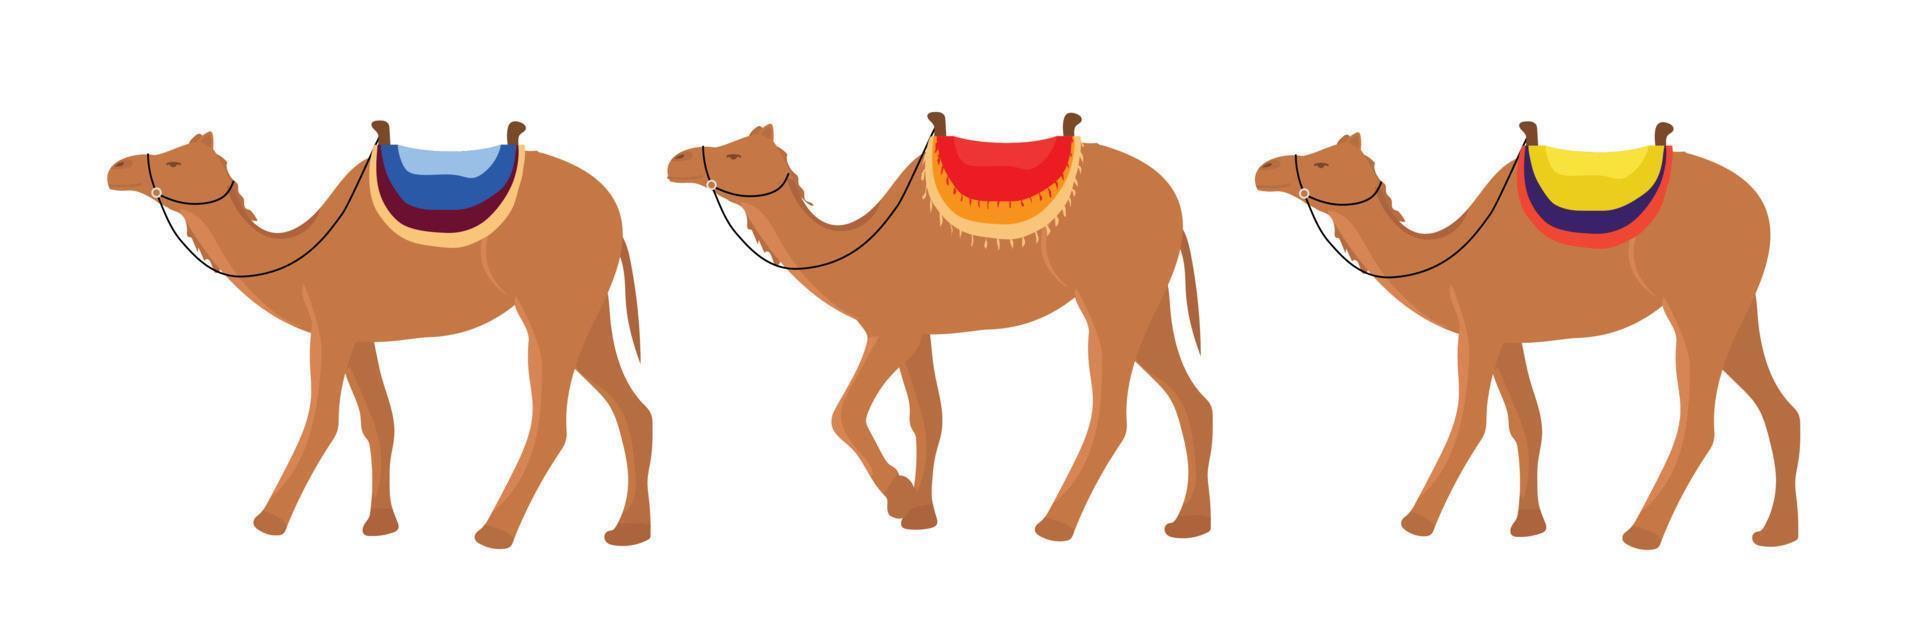 uppsättning av kameler. kameler är gående i linje. vektor illustration.